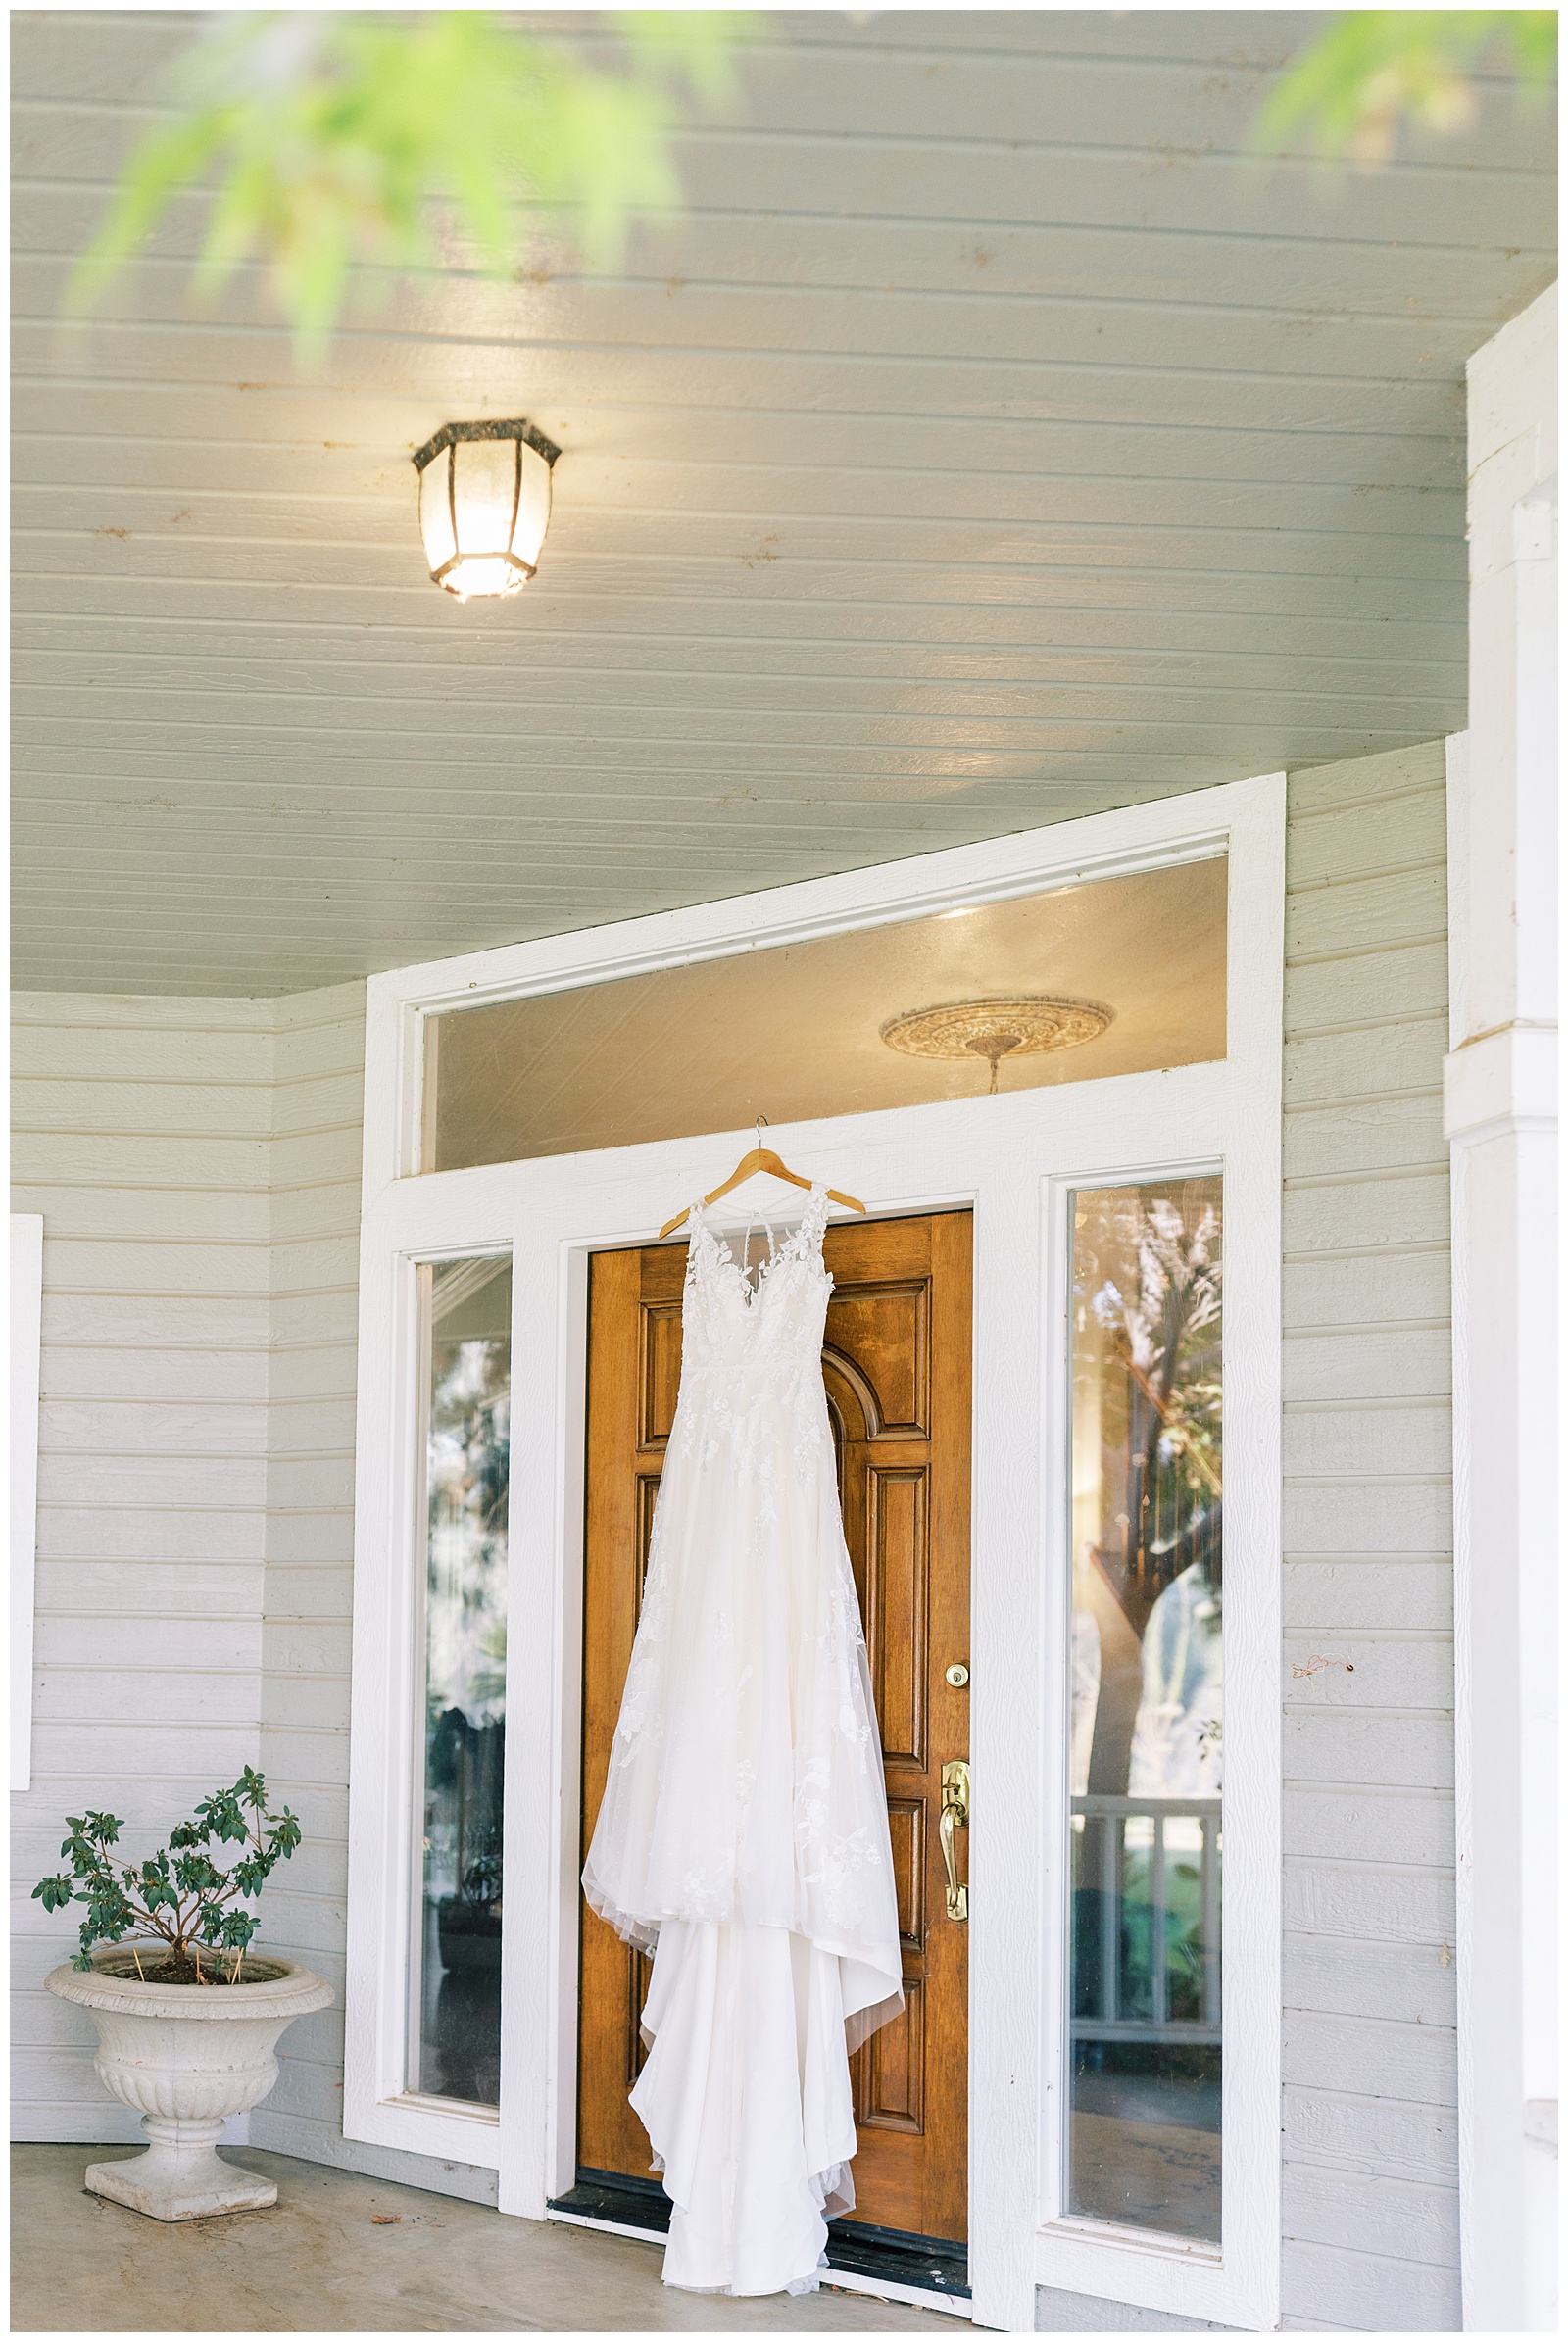 lace wedding dress hanging on door